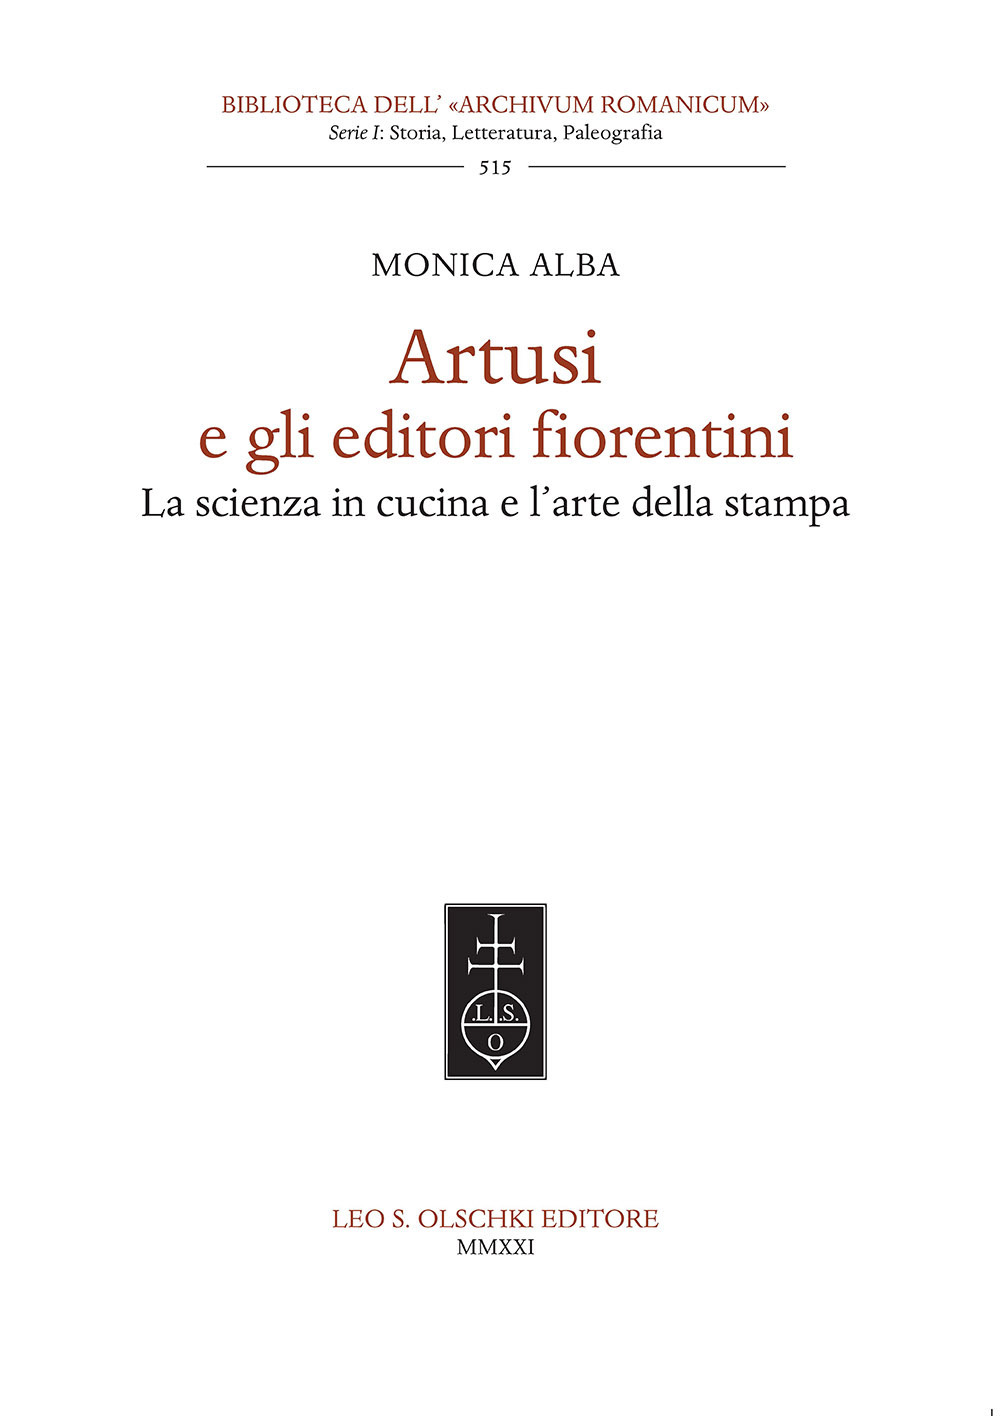 Artusi e gli editori fiorentini. La scienza in cucina e l'arte della stampa